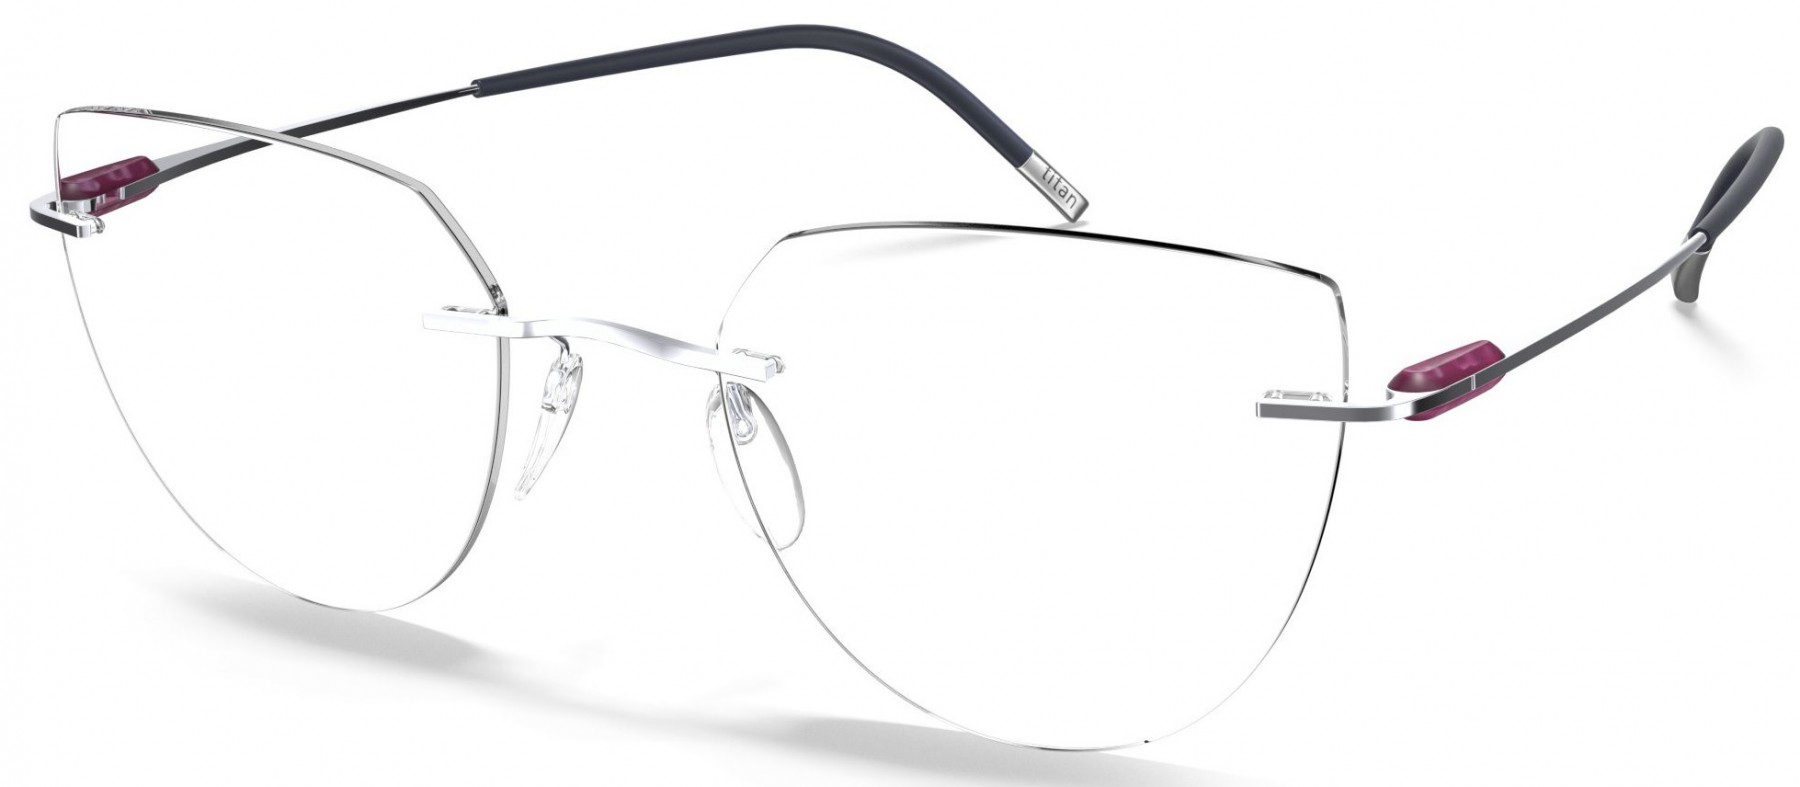 Silhouette 5561 MY 7200 Tam 55 - Oculos de Grau